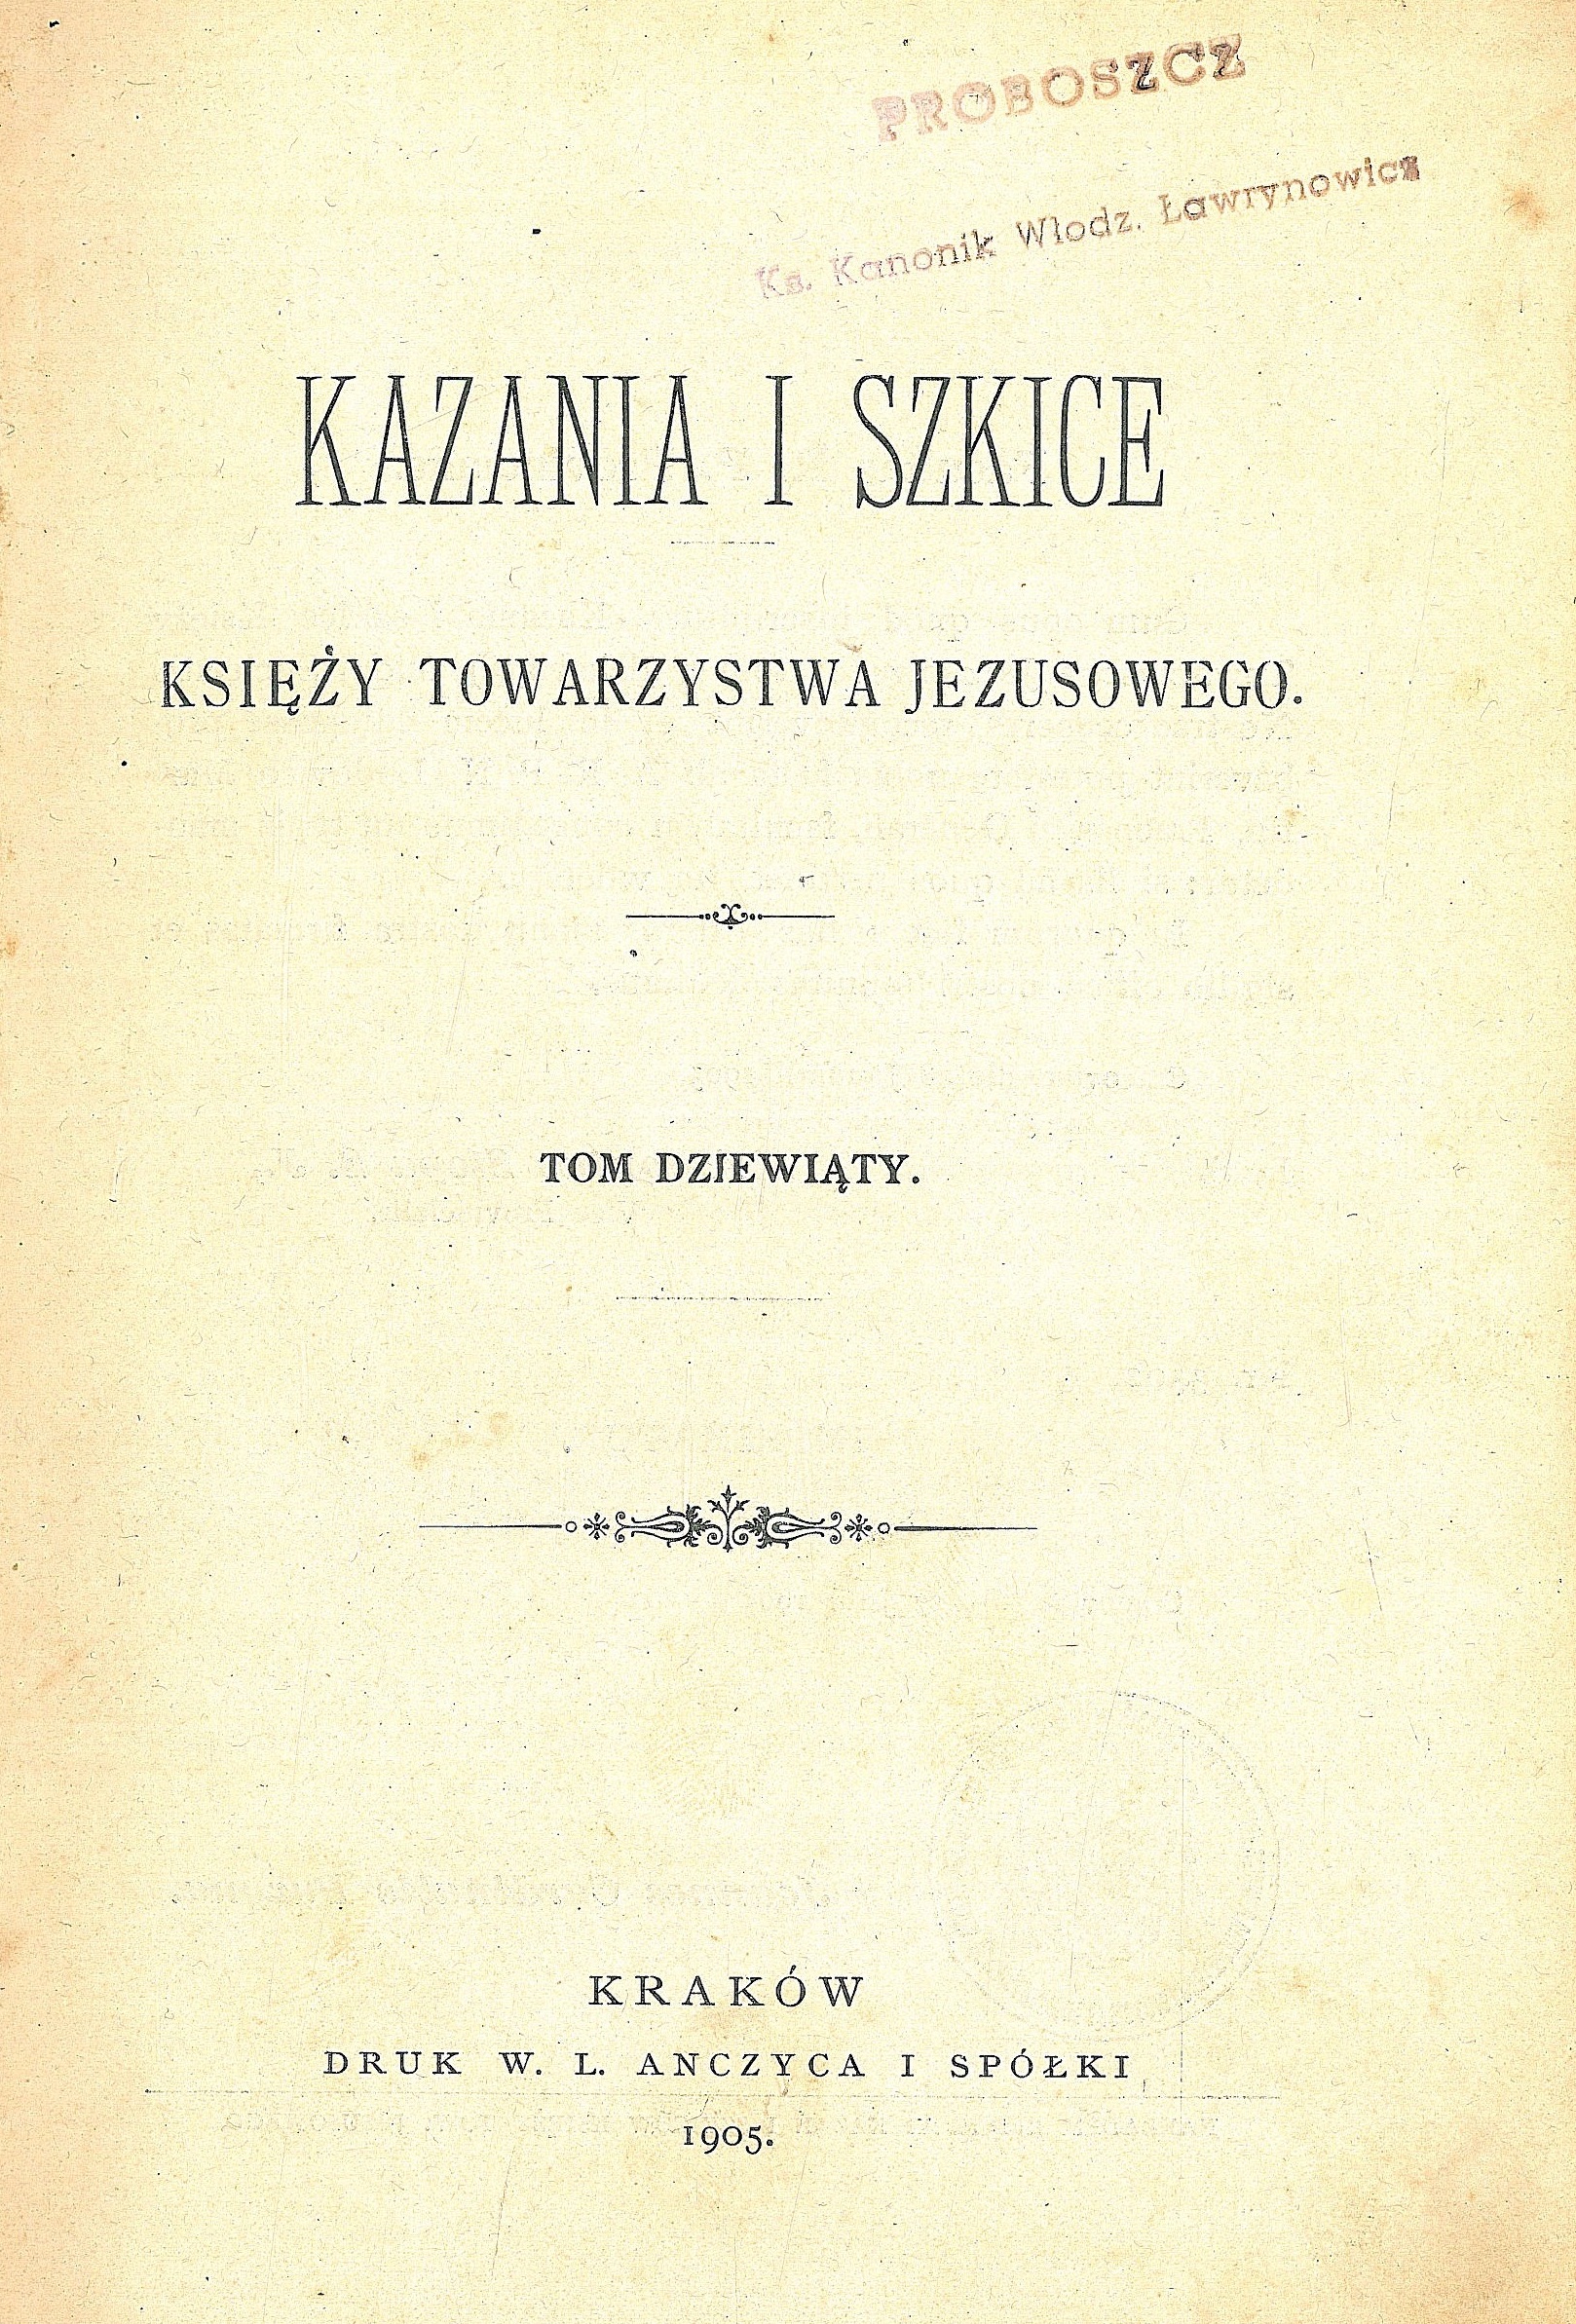 Kazania_i_szkice_Ksiezy_Towarzystwa_Jezusowego_Tom_dziewiaty_Krakow_1905.jpg